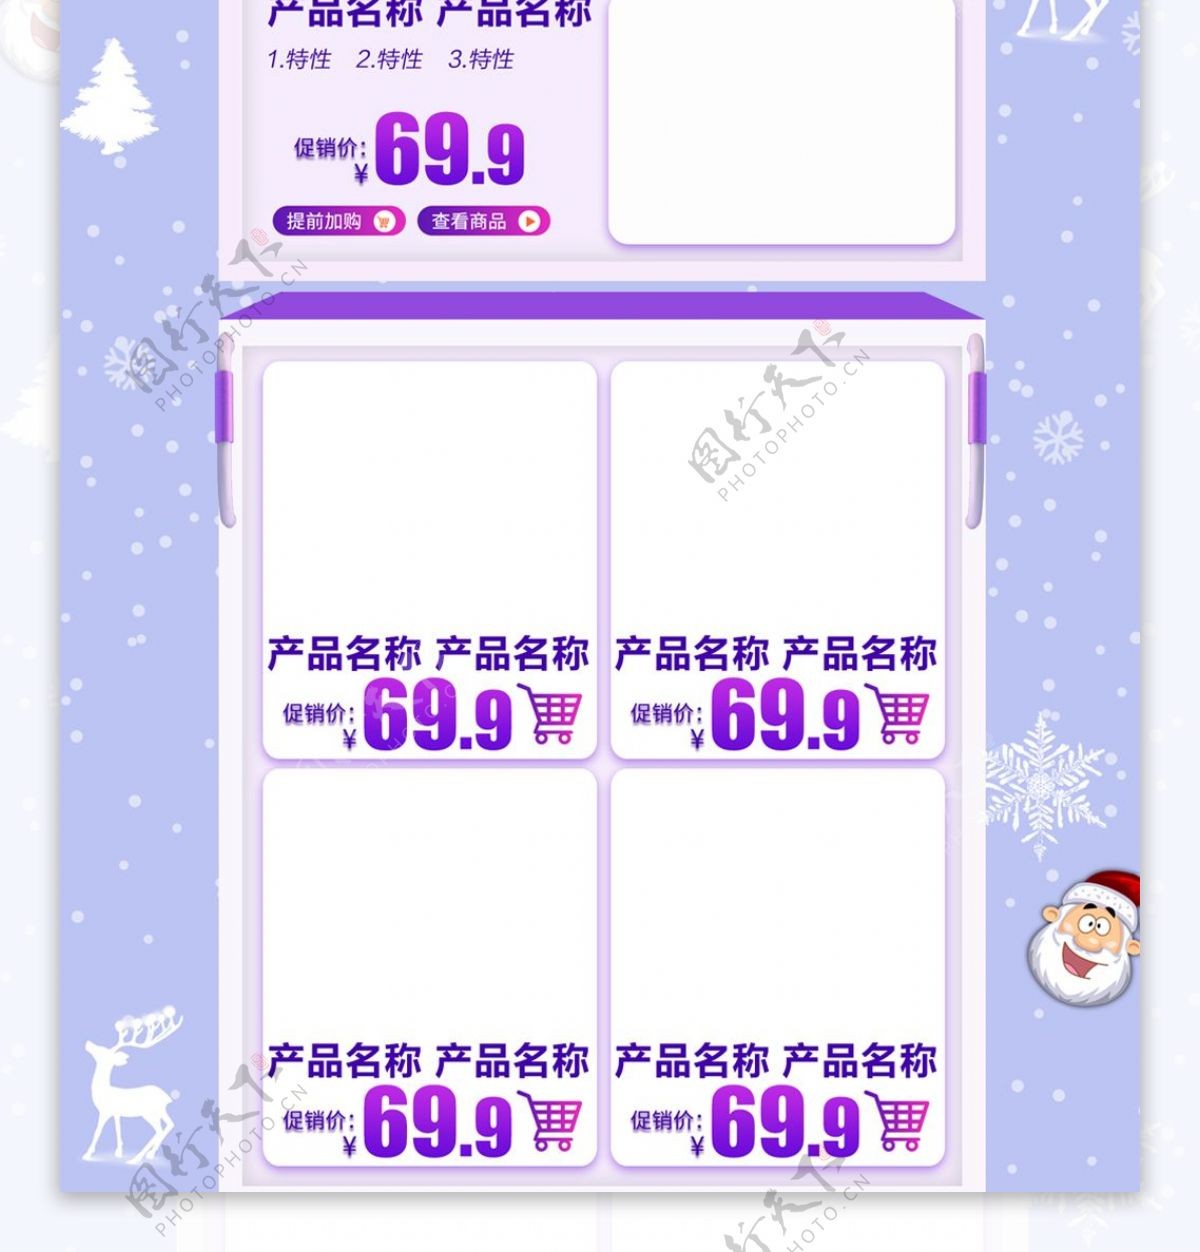 电商淘宝圣诞节紫色清新PC端首页